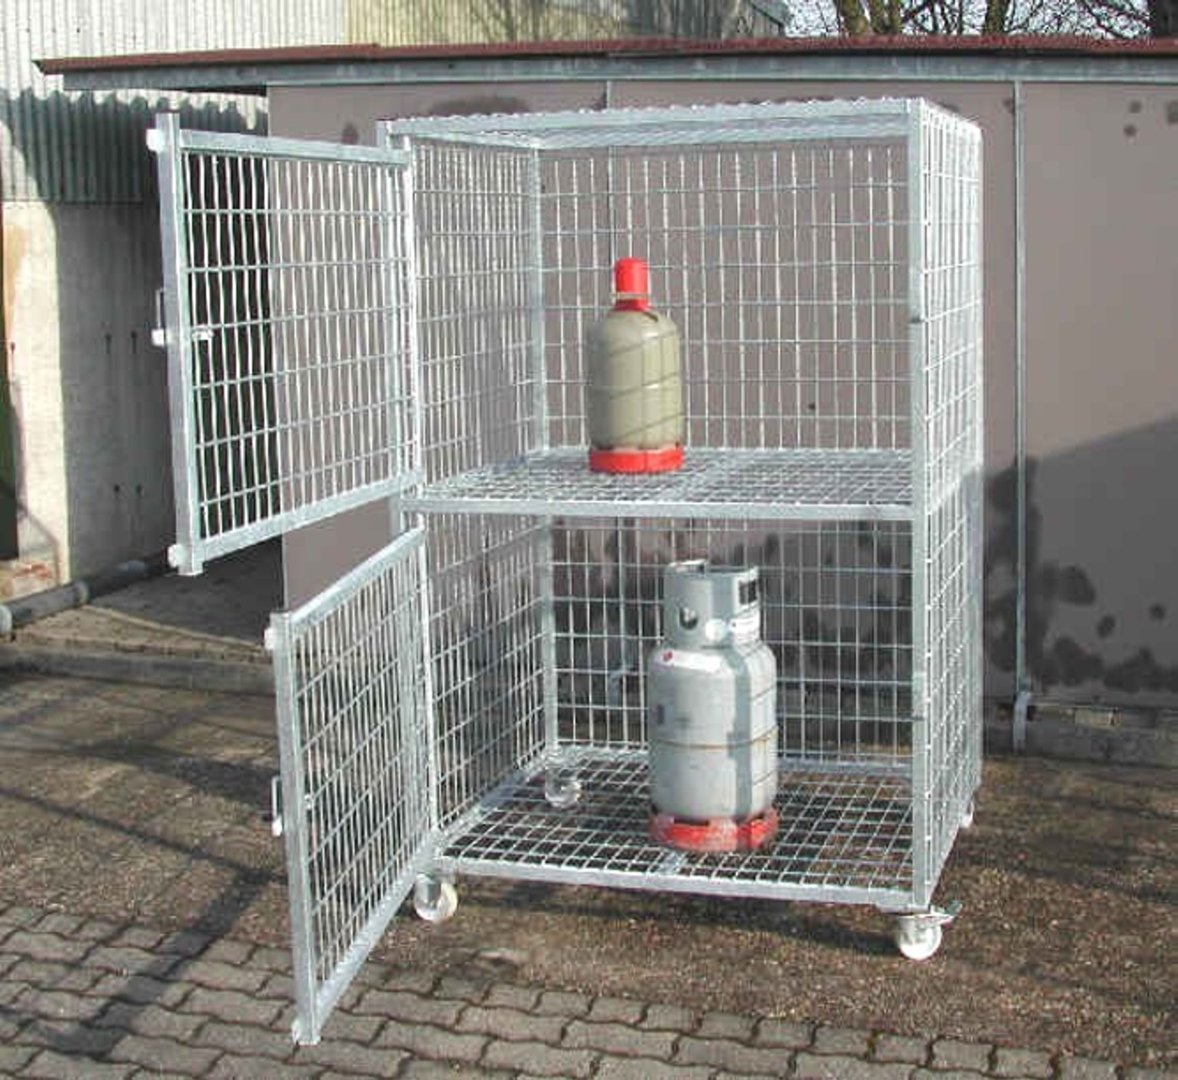 Fahrbare Lagerbox für Druckgasbehälter, 120x180x100cm BxHxT, Kapaz. 24 x 11 kg, verzinkt